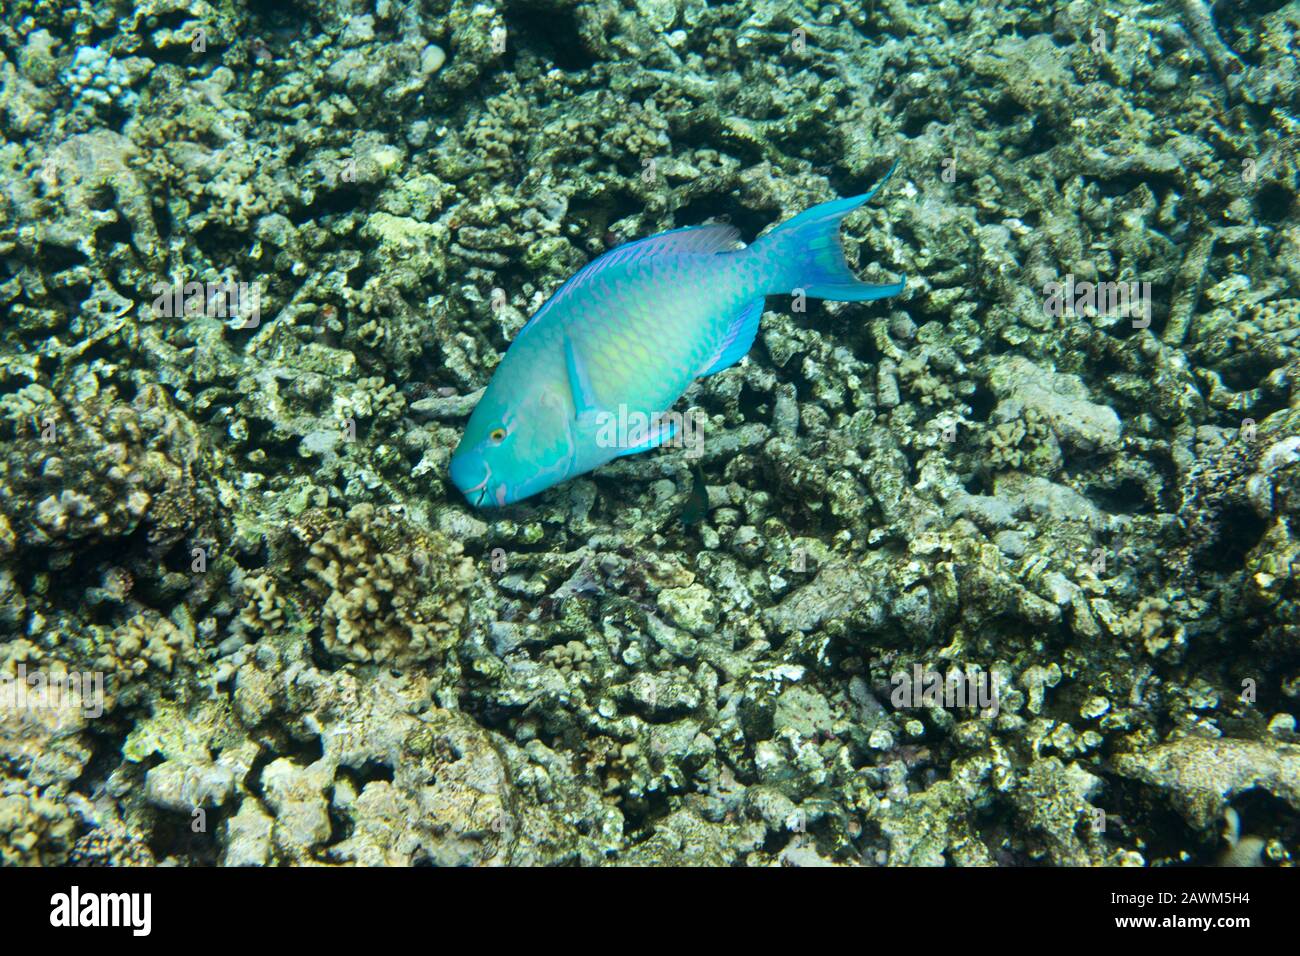 A scarus frenatus fish in Seychelles sea Stock Photo